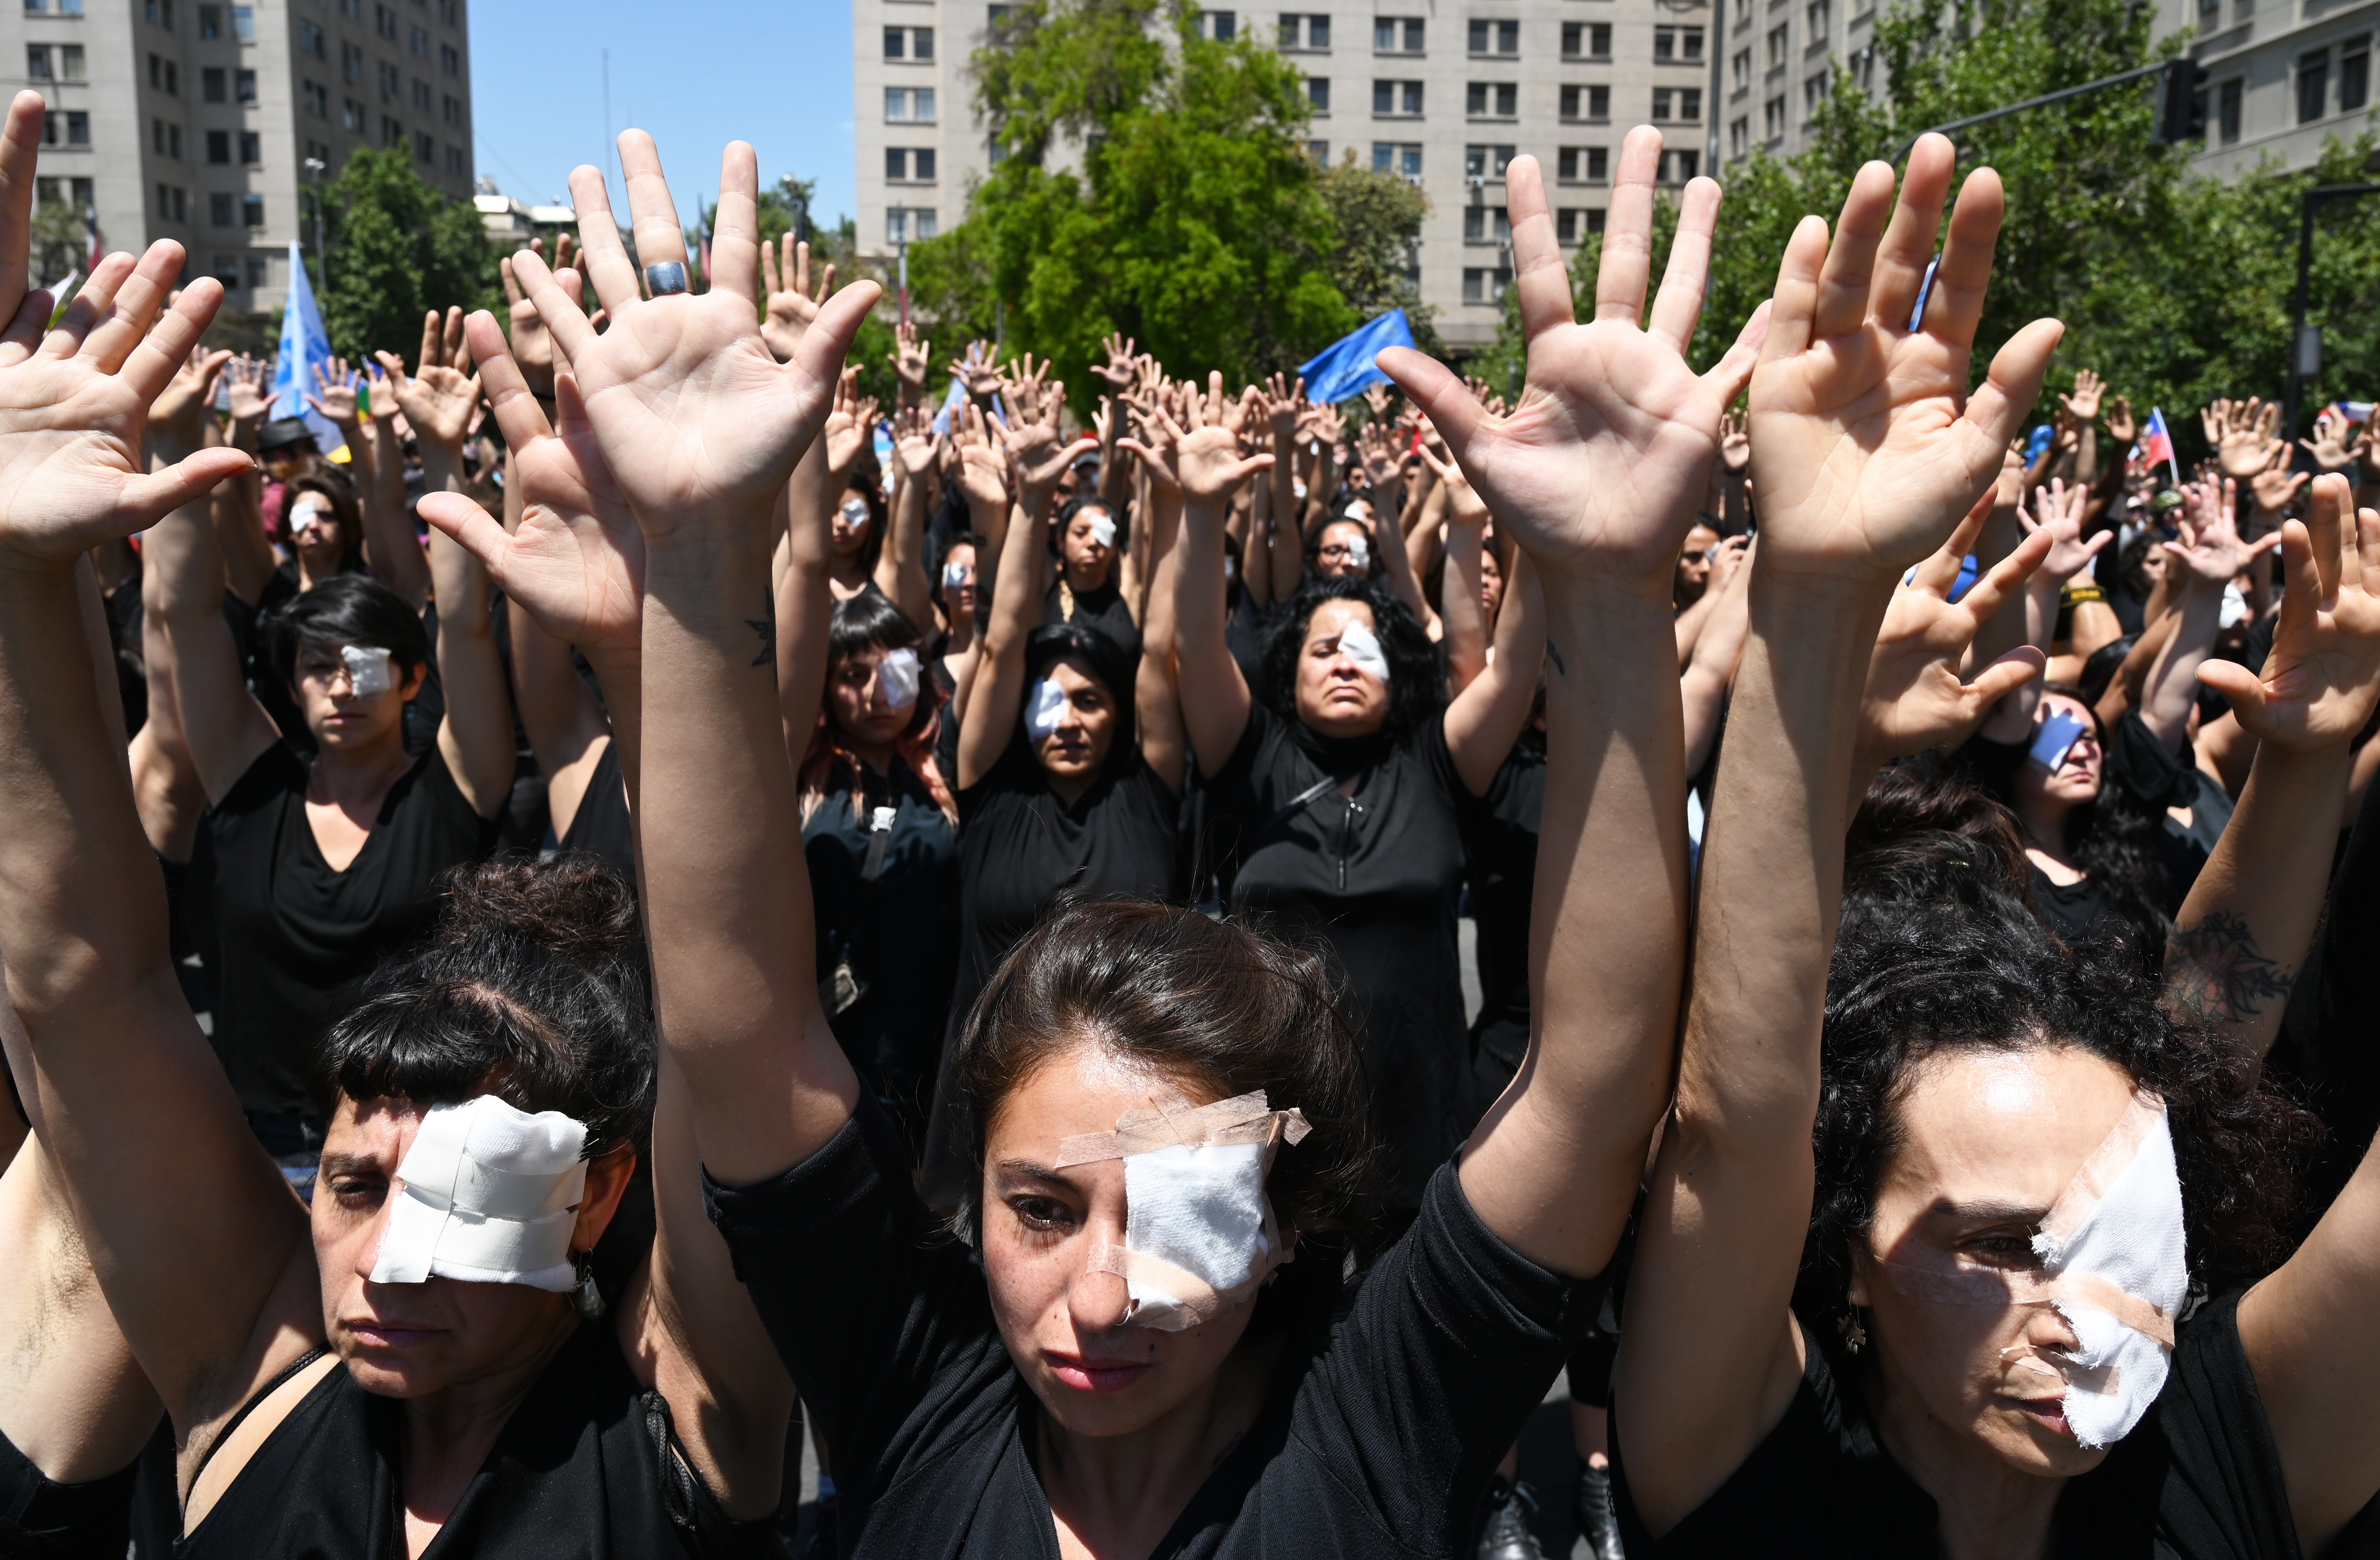 Casi 200 personas presentaron lesiones oculares y ceguera durante protestas en Chile